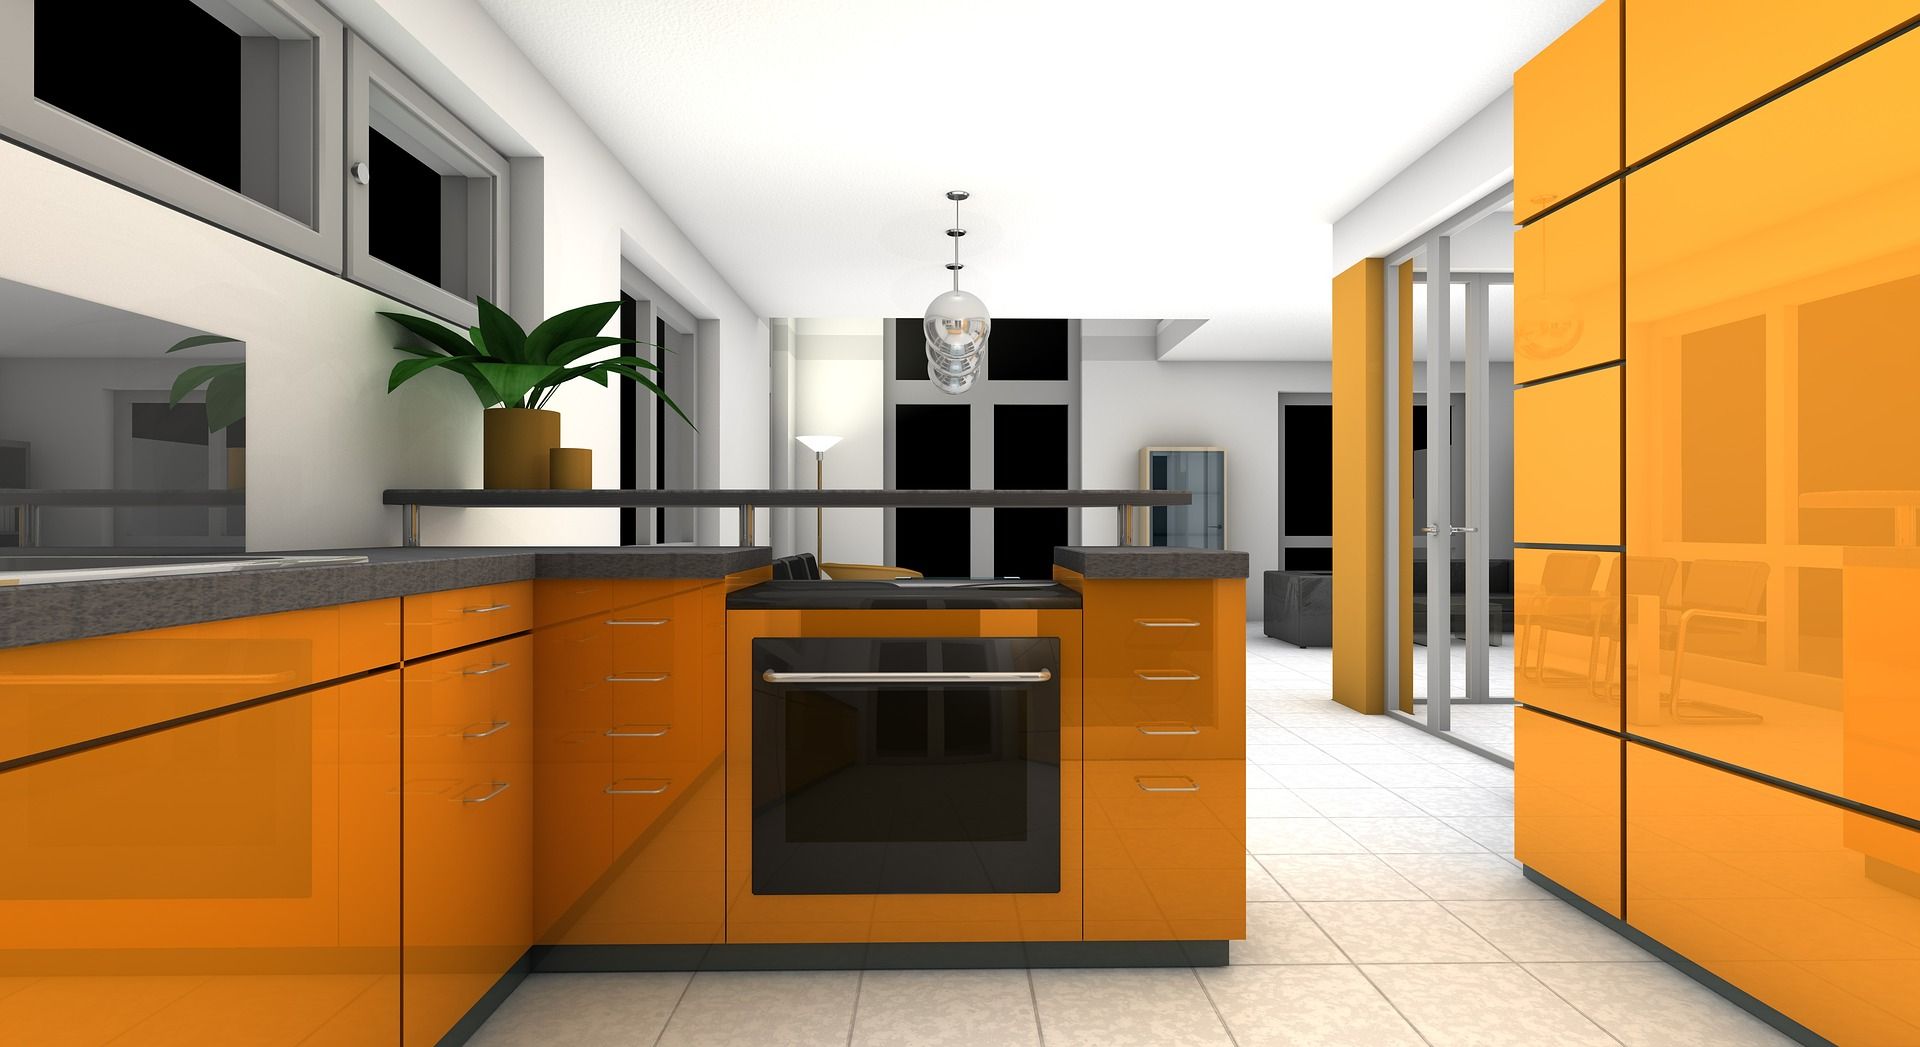 Open kitchen – Contemporary design for an original kitchen, 21, eurocraftswfl.com